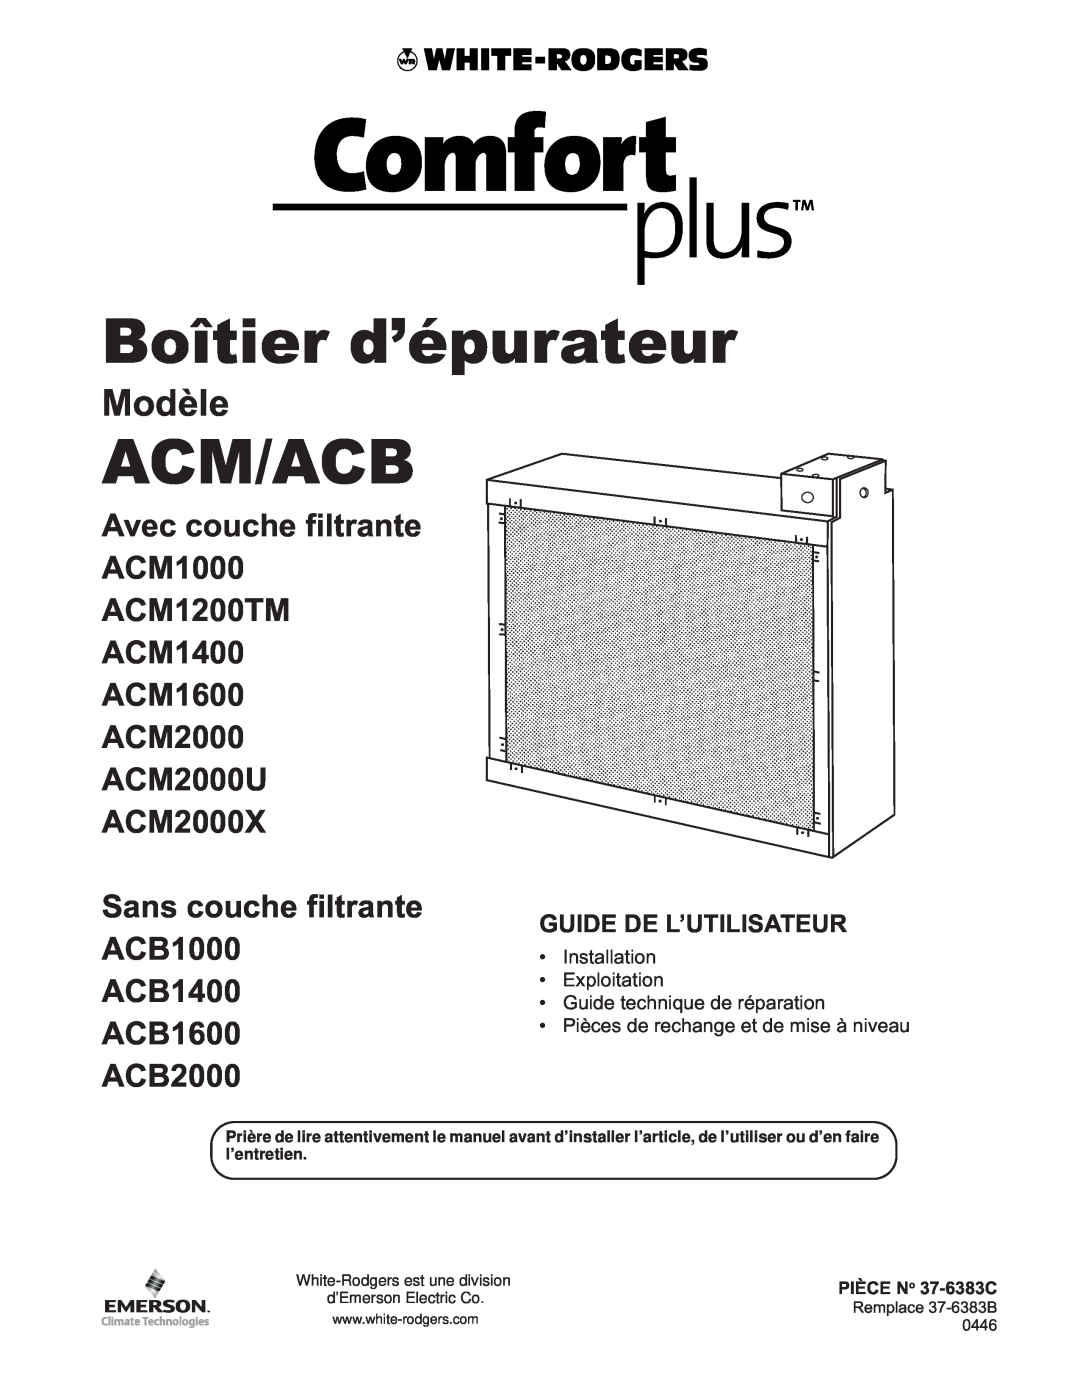 White Rodgers pmnACM/ACB owner manual Boîtier d’épurateur, Acm/Acb, Modèle 